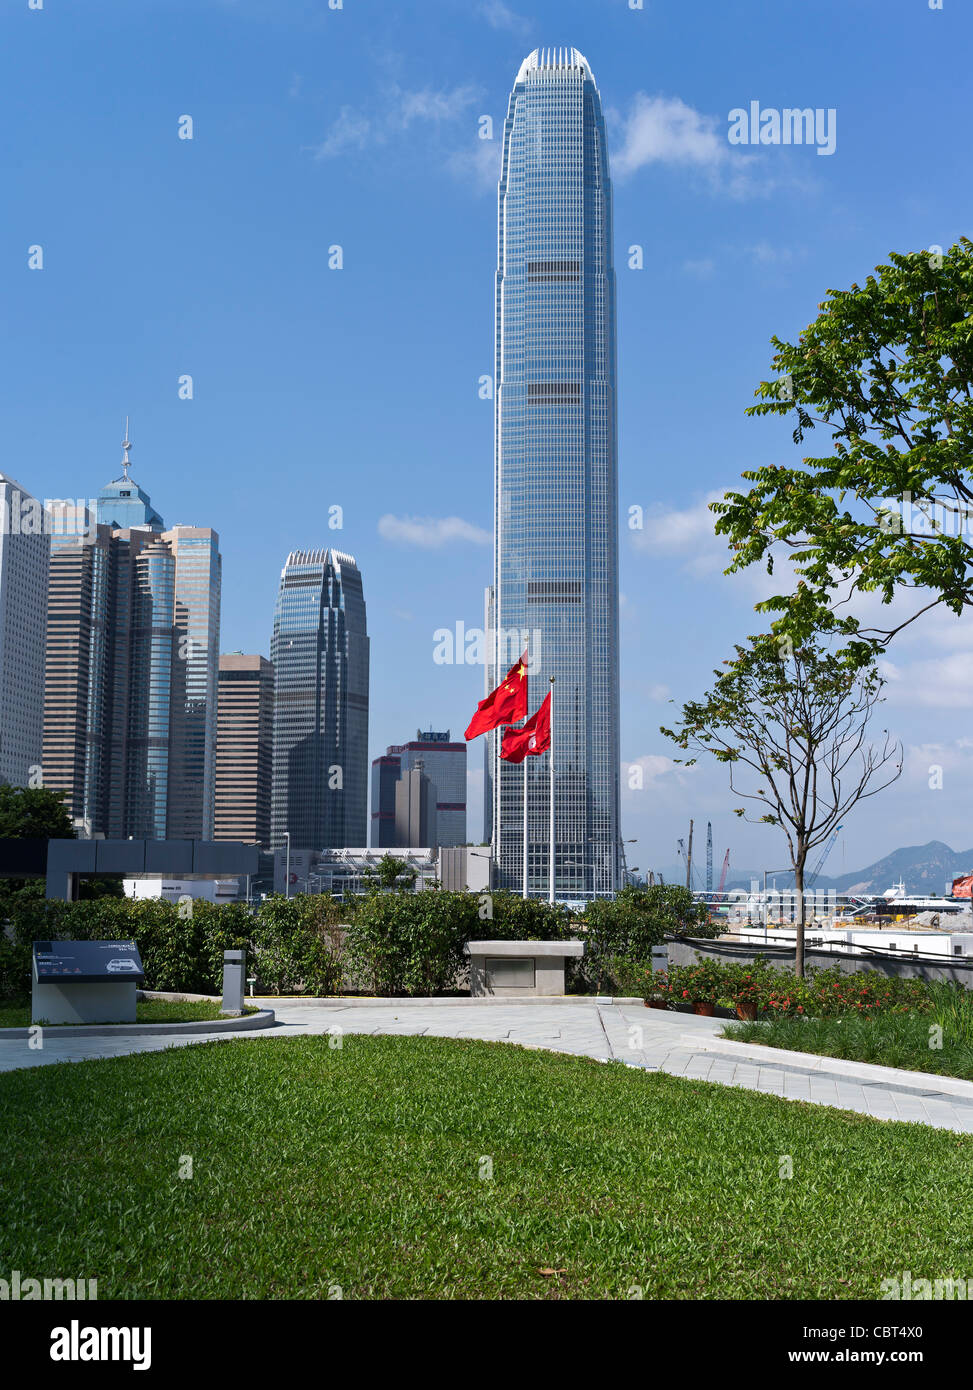 dh ALMIRANTAZGO HONG KONG Tamar parque IFC 2 torre Bandera china y banderas de Hong Kong Legco jardín china rascacielos paisaje urbano central día Foto de stock